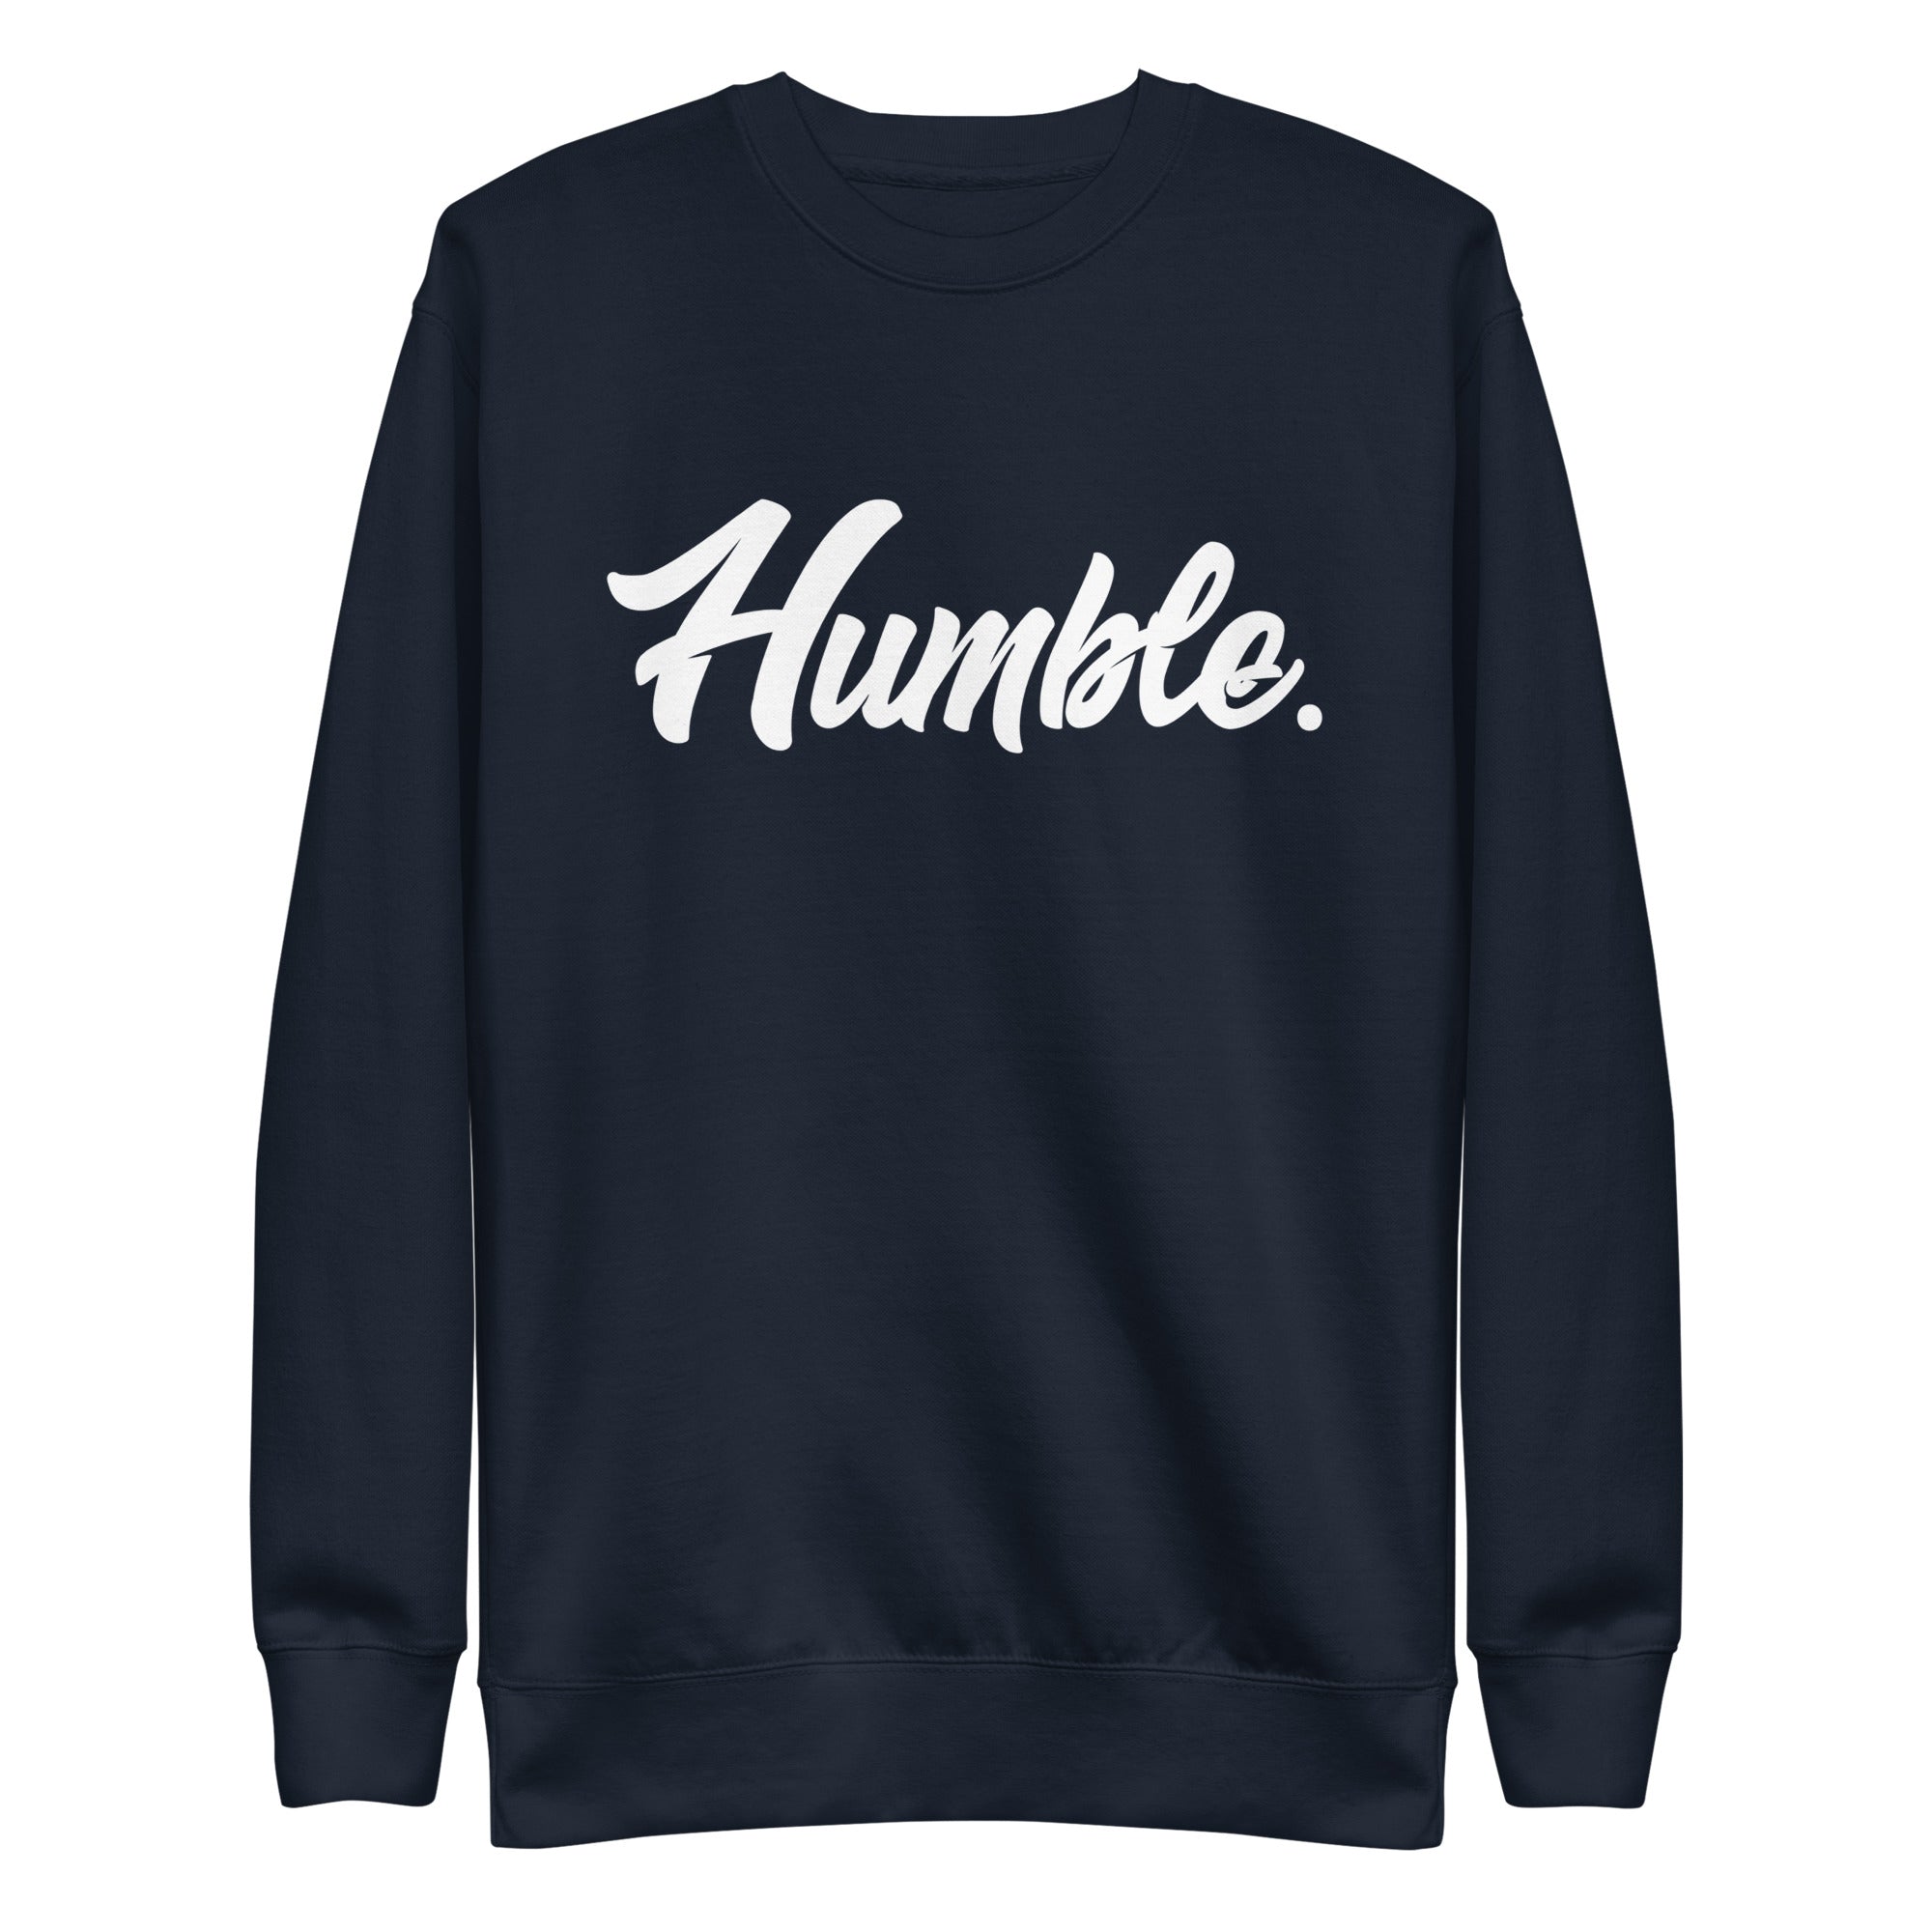 Humble. Premium Sweatshirt